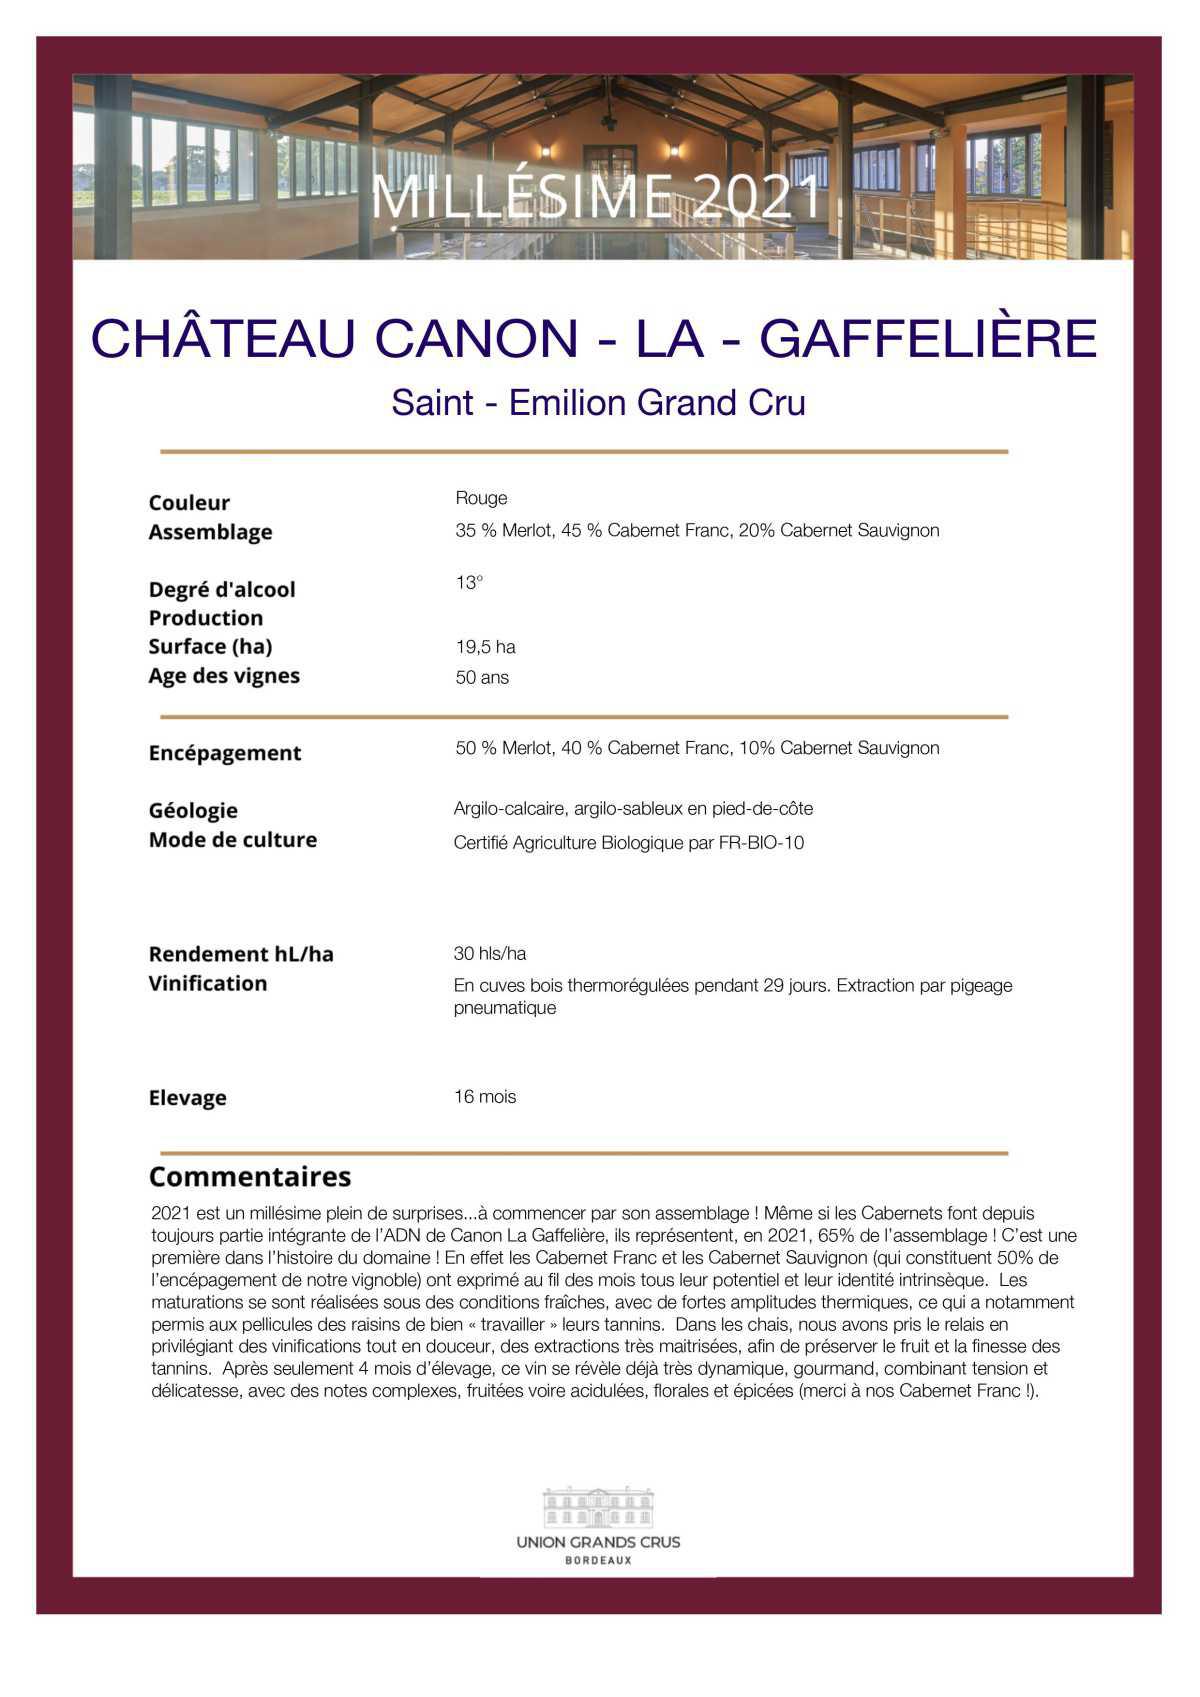 Château Canon - La - Gaffelière